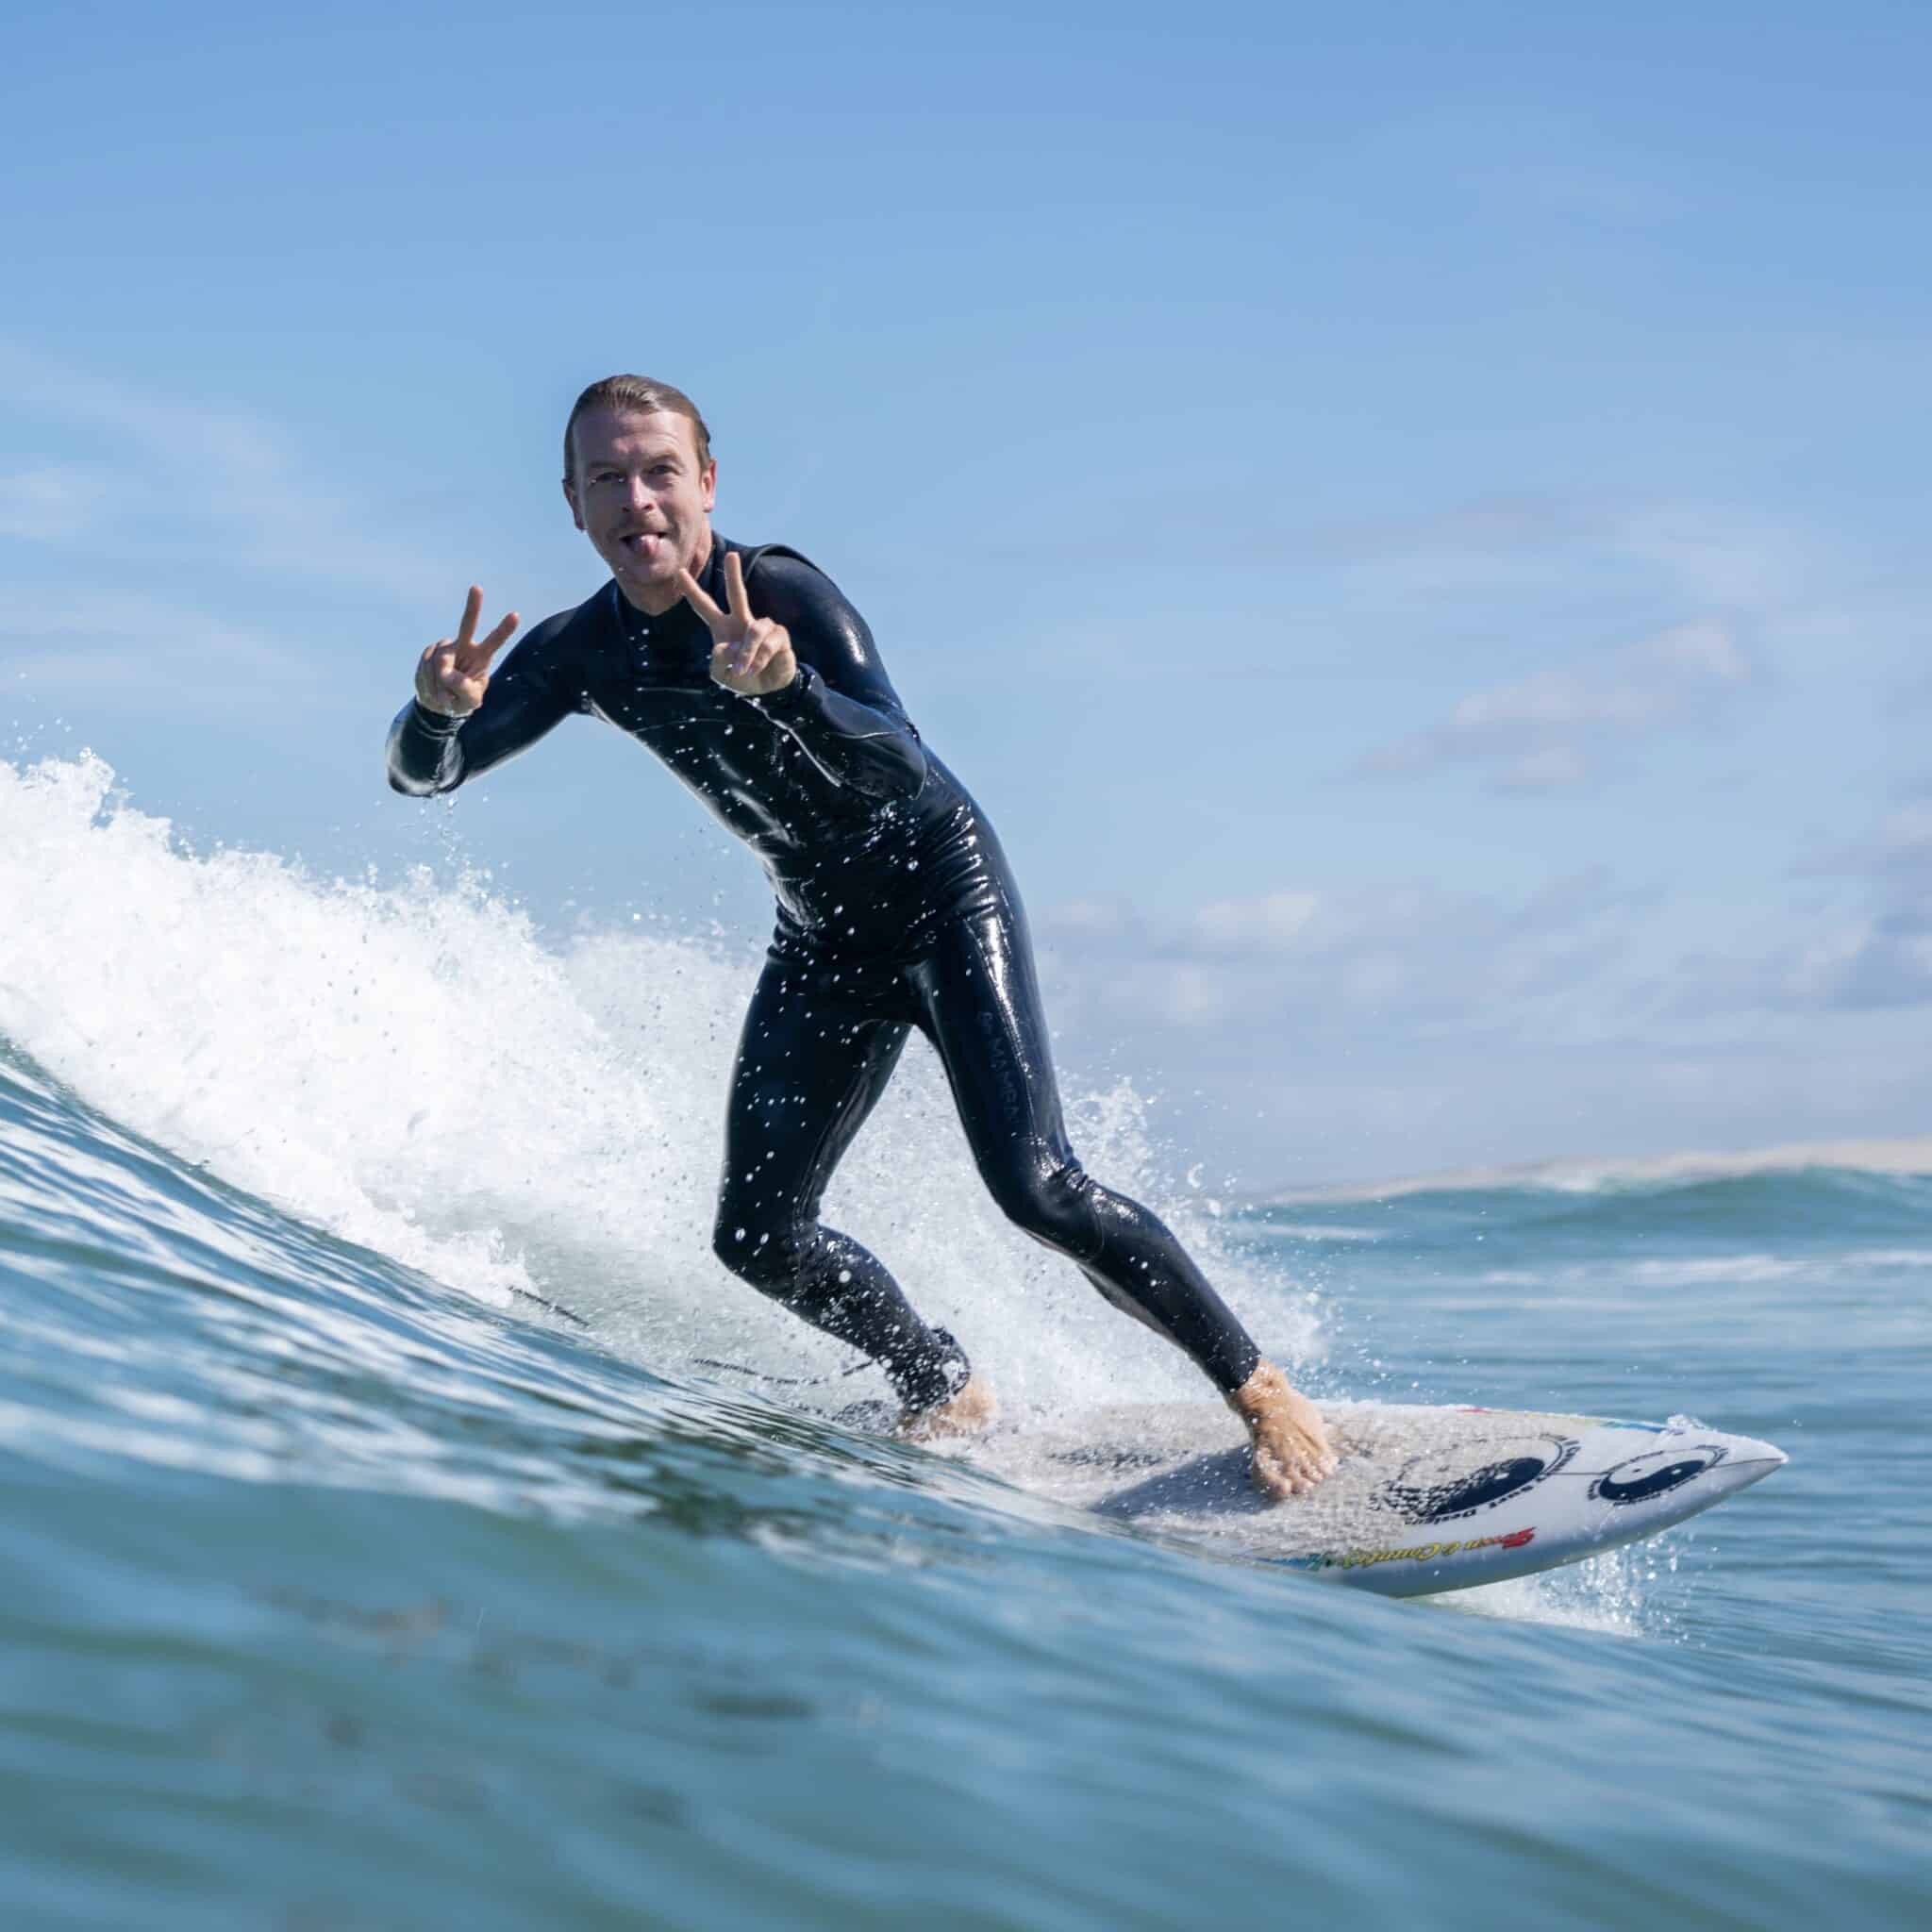 Laurent-moniteur-de-surf-buena-onda-ecole-de-surf